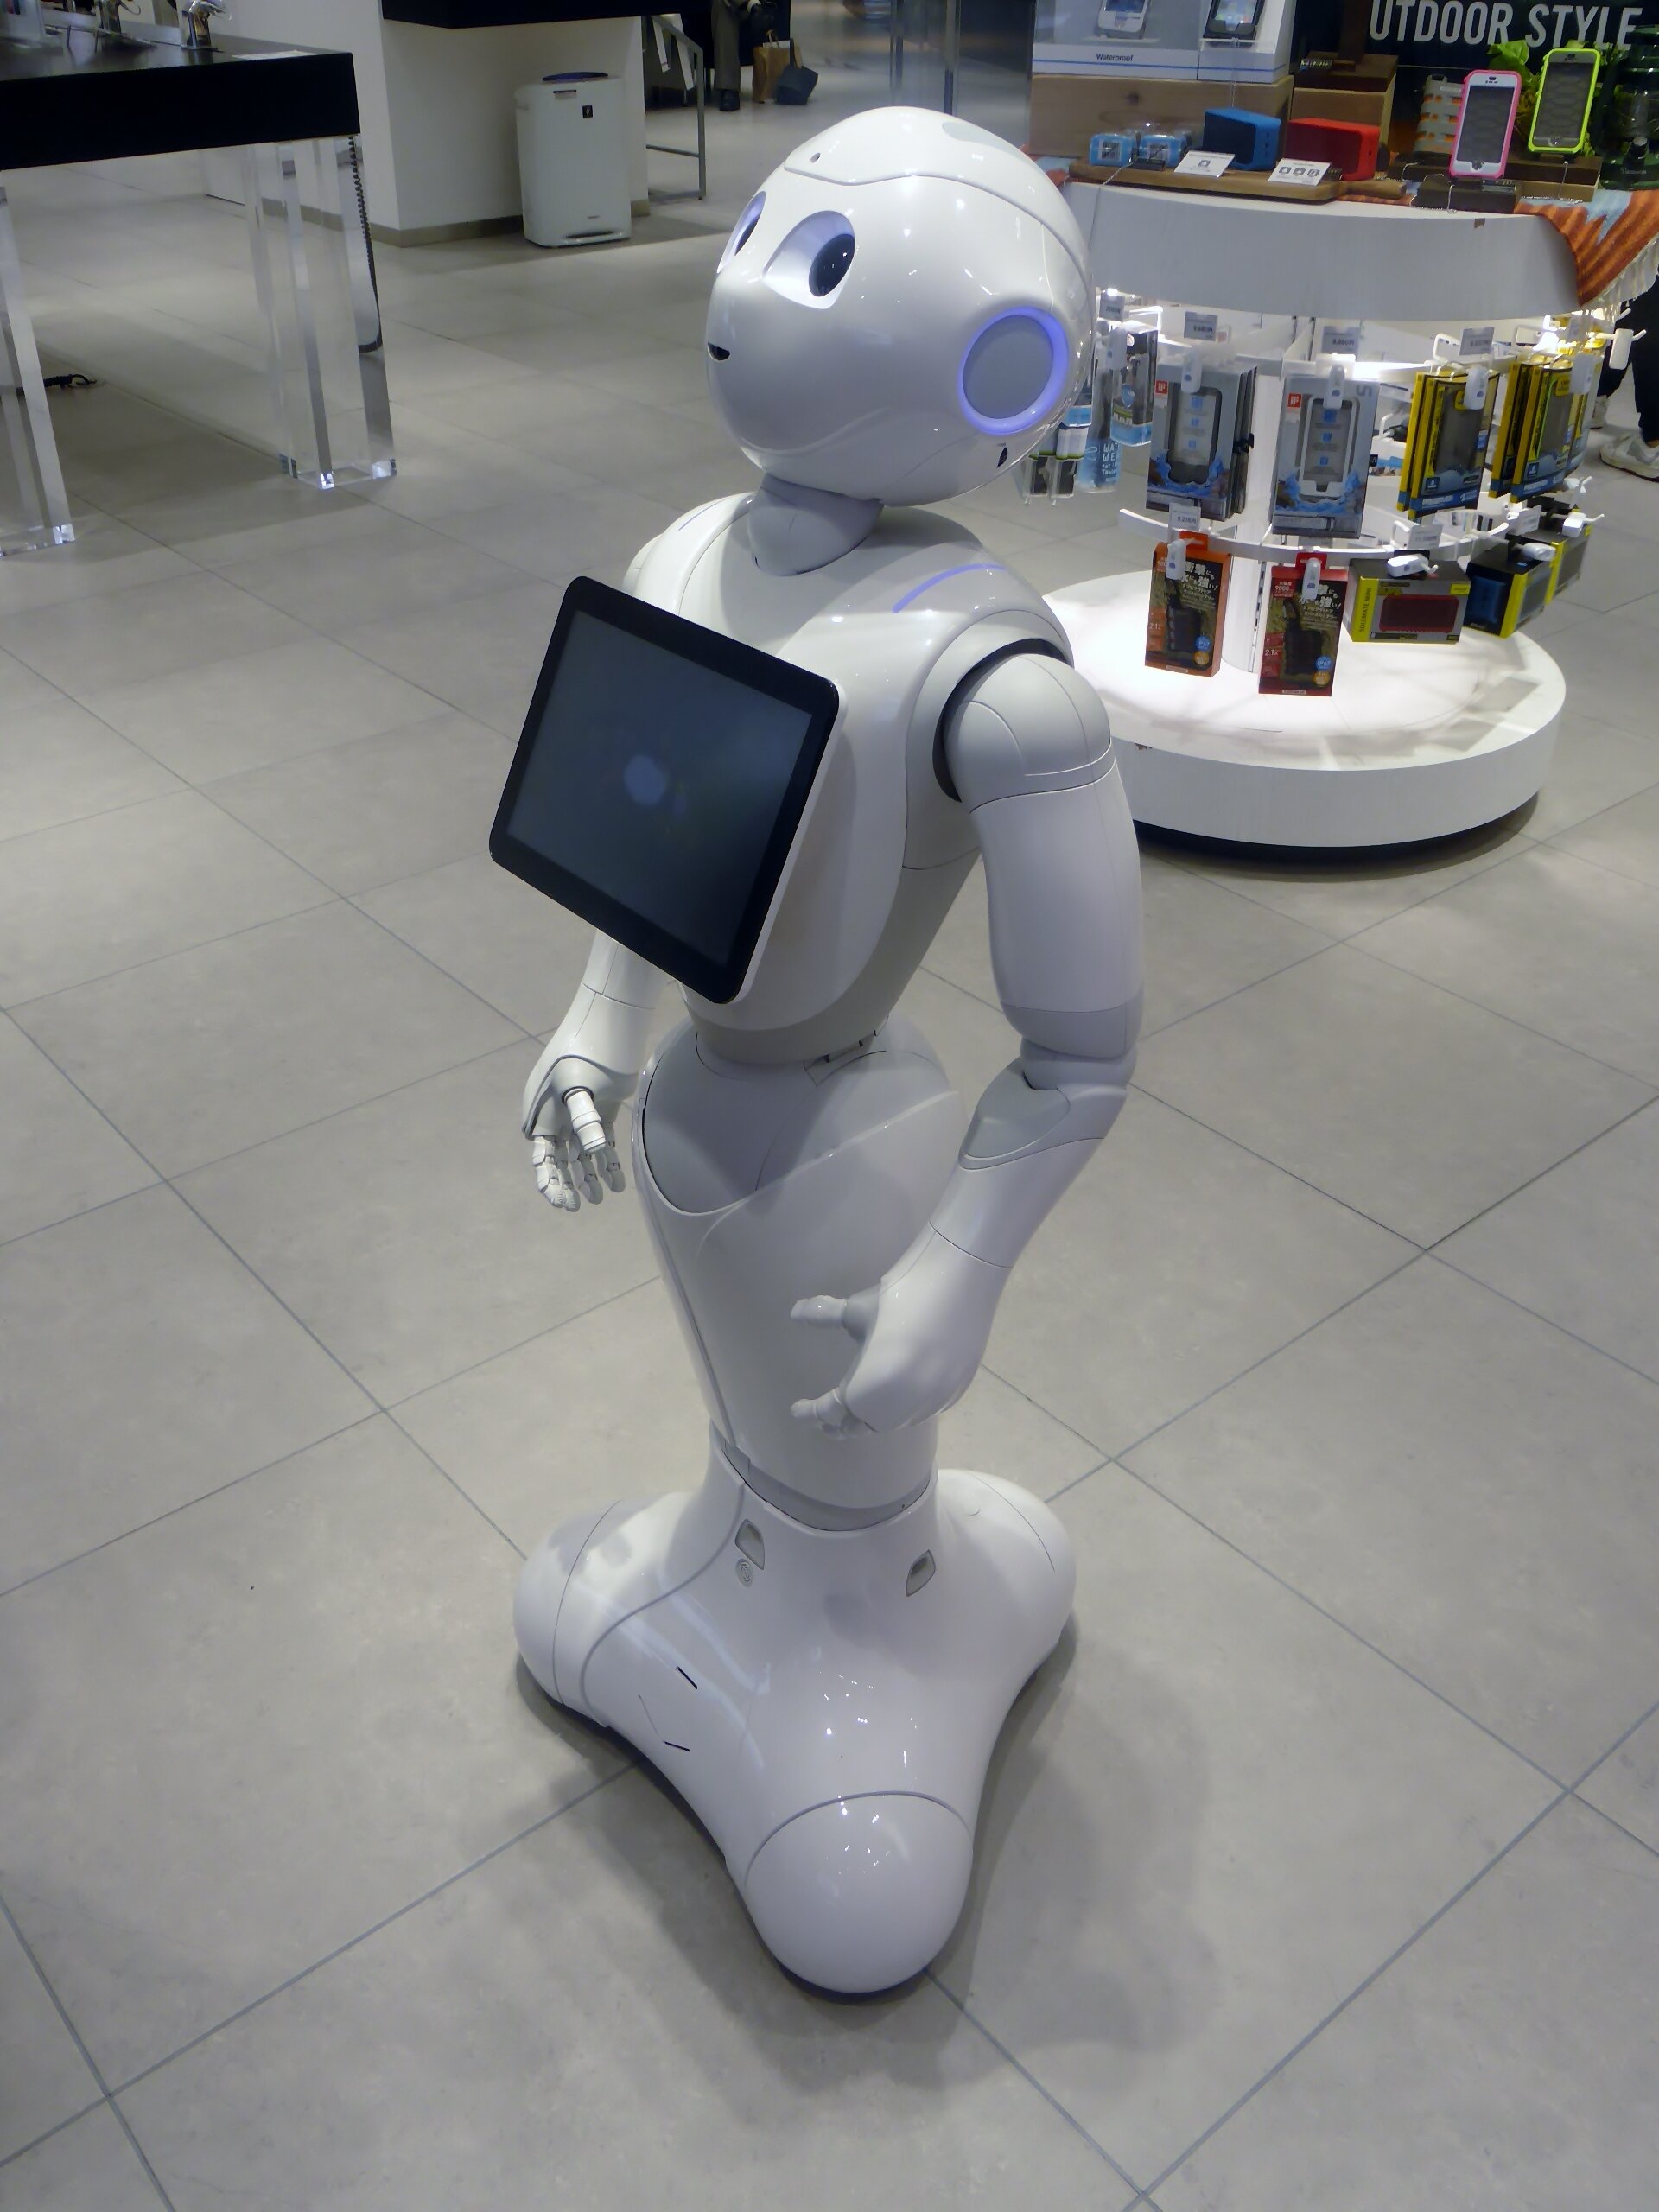 世界初の量産ヒト型ロボット「Pepper」